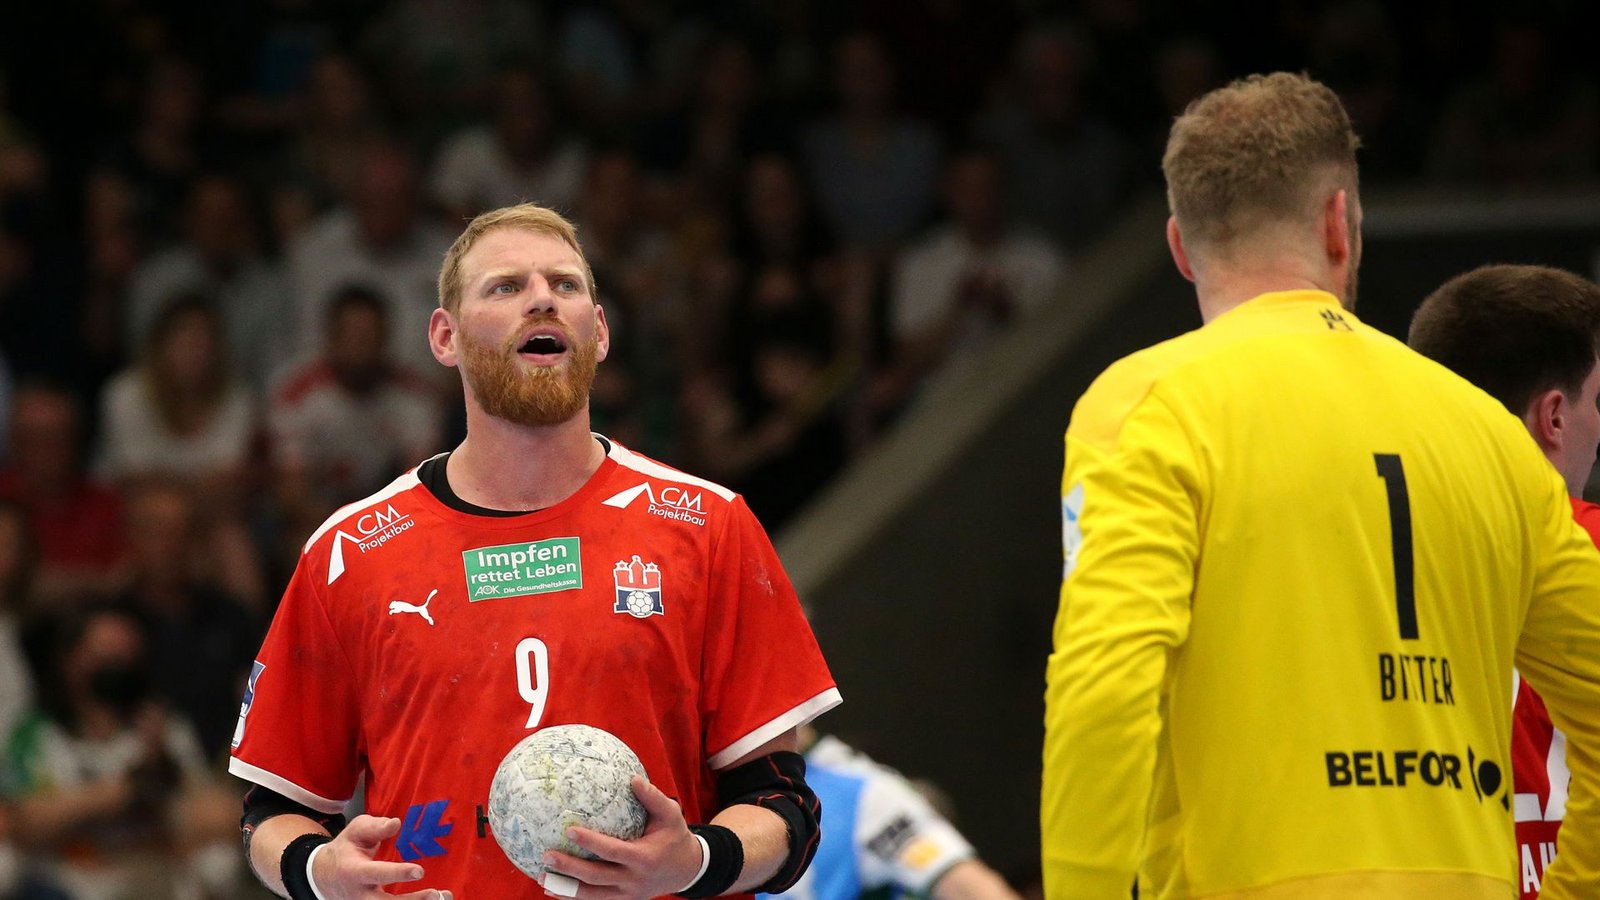 Manuel Späth zeigte ein starkes Spiel in seinem letzten Auftritt als Handballprofi in der EWS-Arena.Foto: Pressefoto Baumann/Alexander Keppler